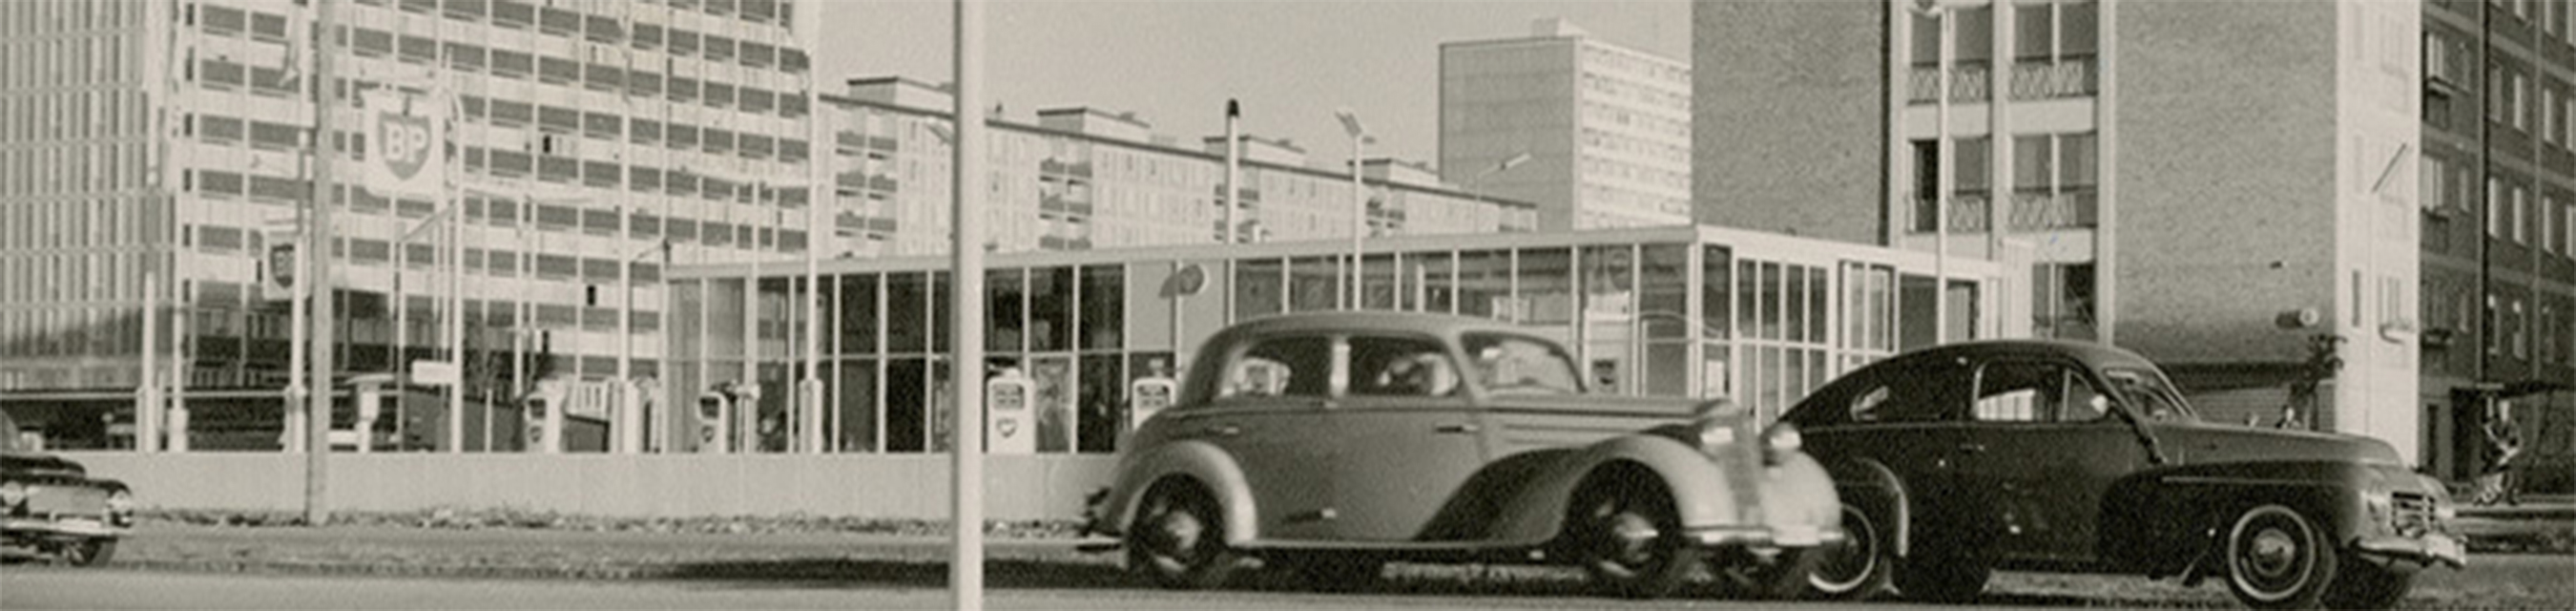 1950-talet. Lorensborg med bilar.